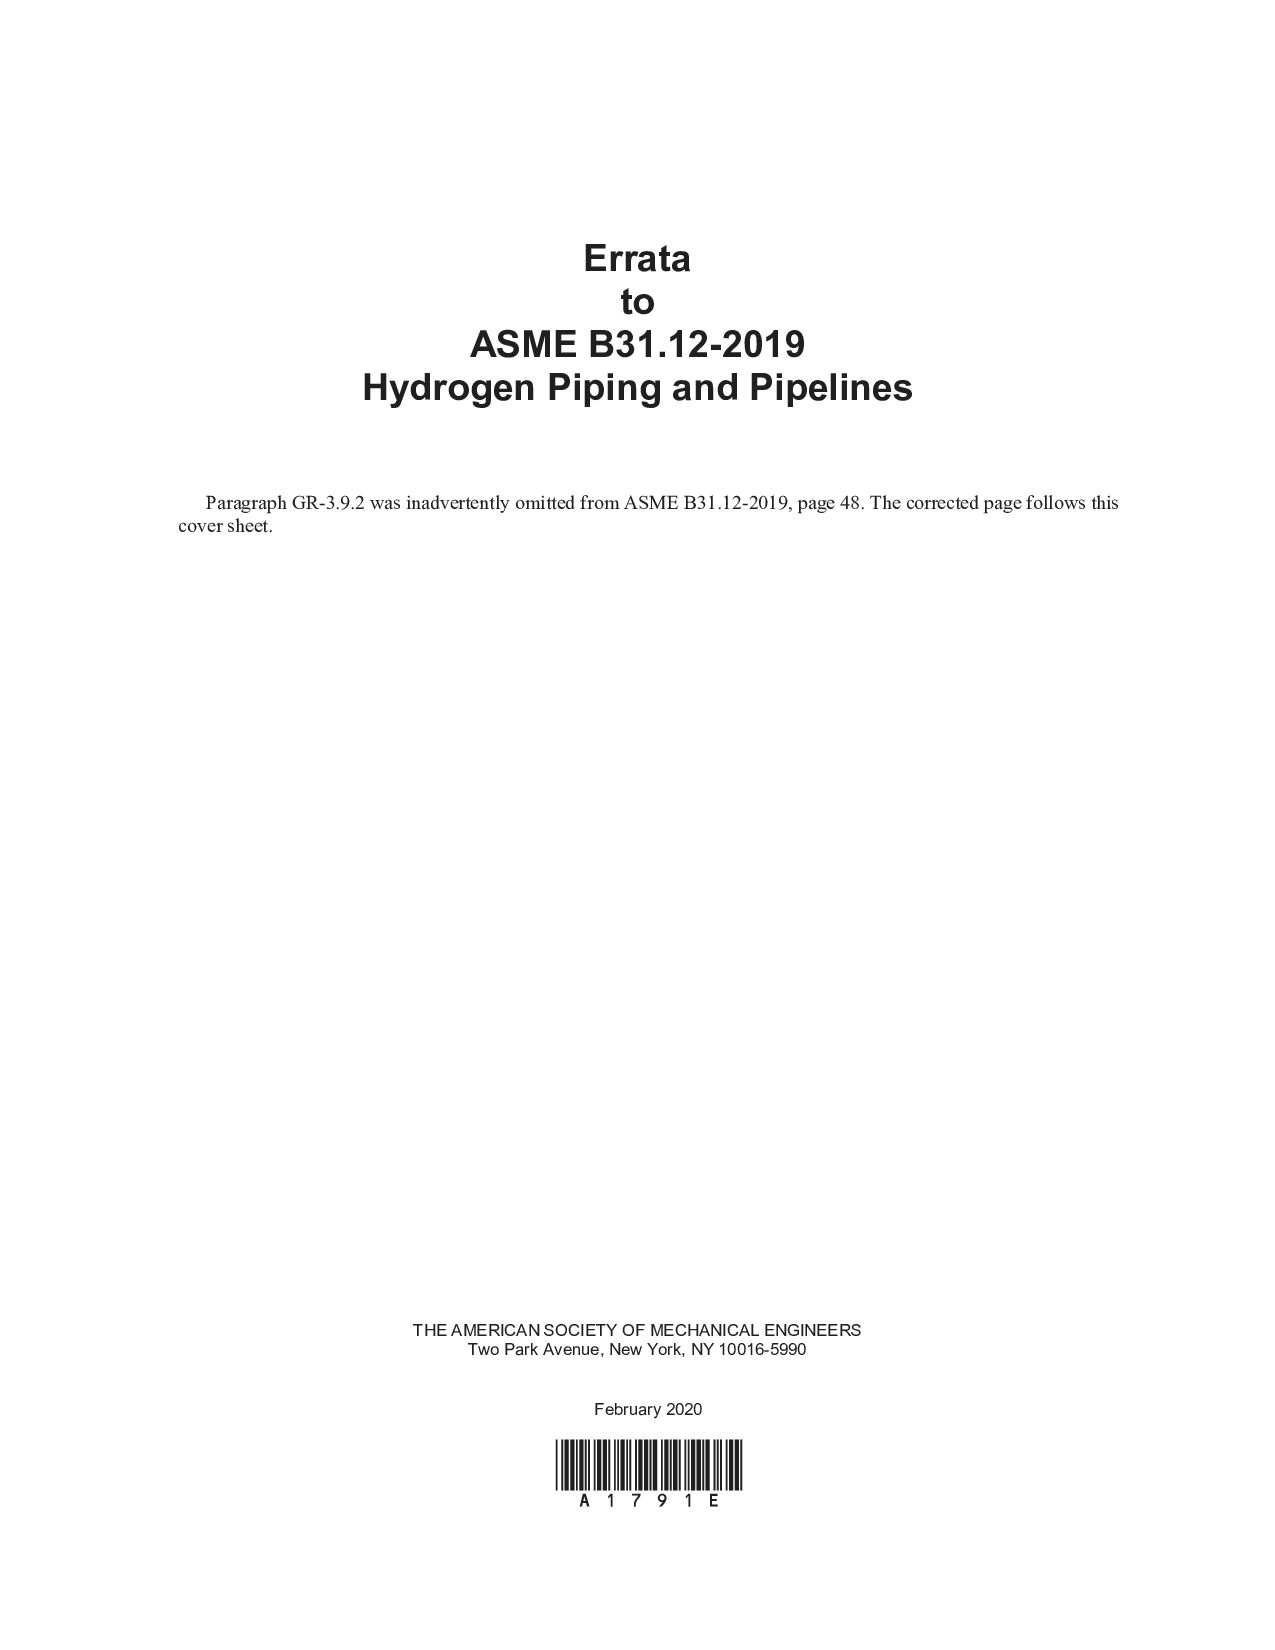 ASME B31.12-2019/errata-2020